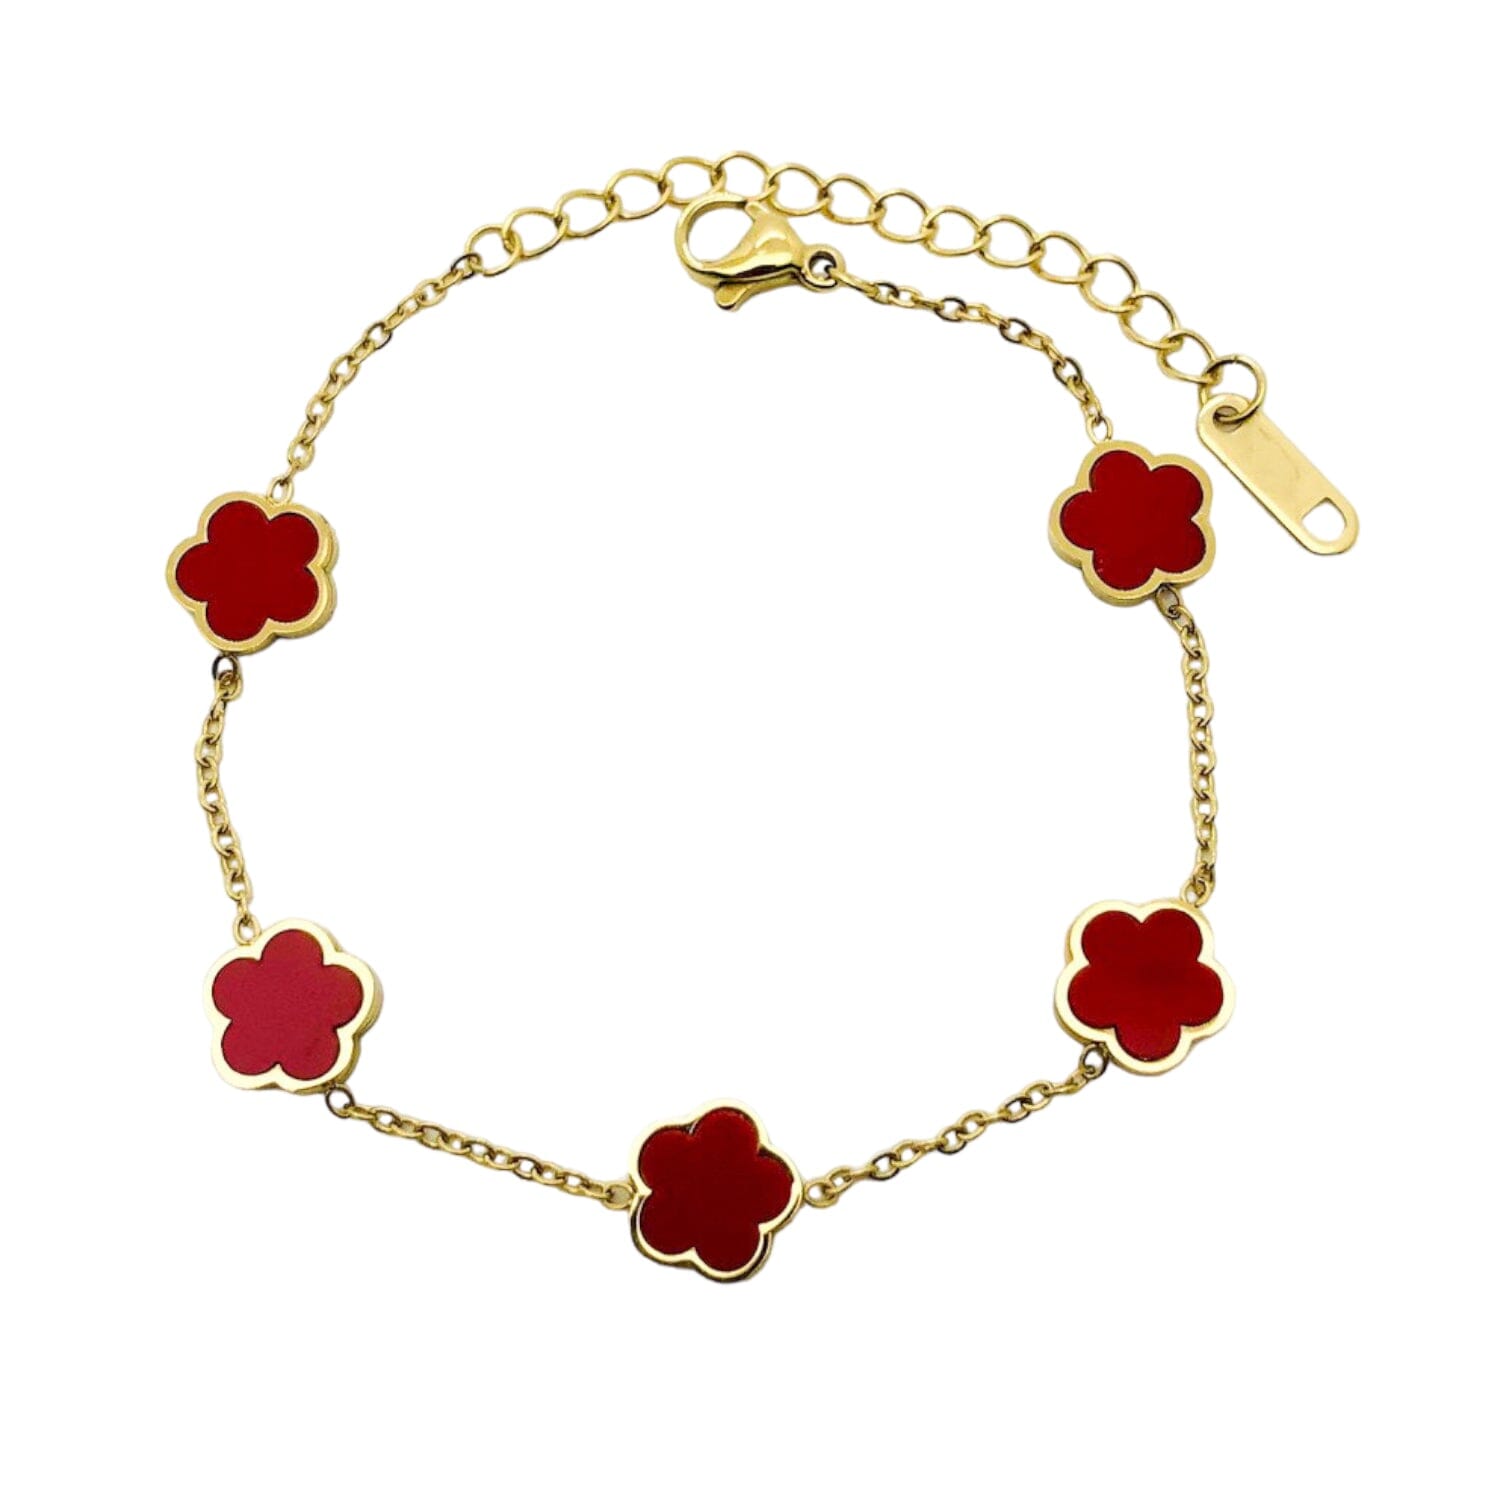 Kayla Flower Clover Gold Bracelet Bracelets Trendzio Jewelry Red Carnelian 